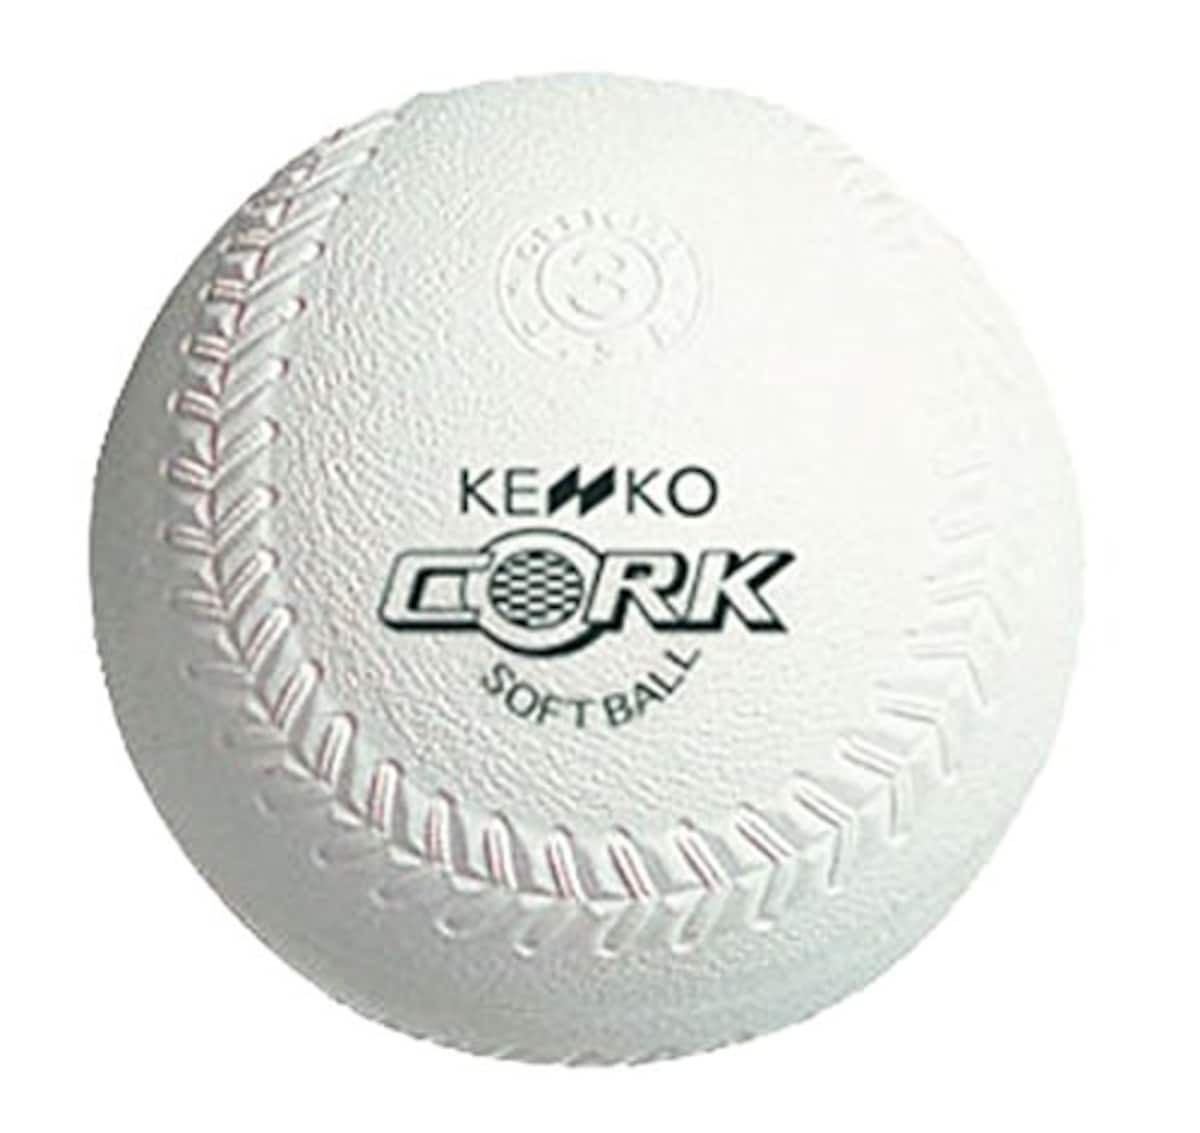 ナガセケンコー(KENKO)のナガセケンコー(KENKO) 新ケンコーソフトボール3号 コルク芯 1箱(6個) S3C-NEW | 価格比較